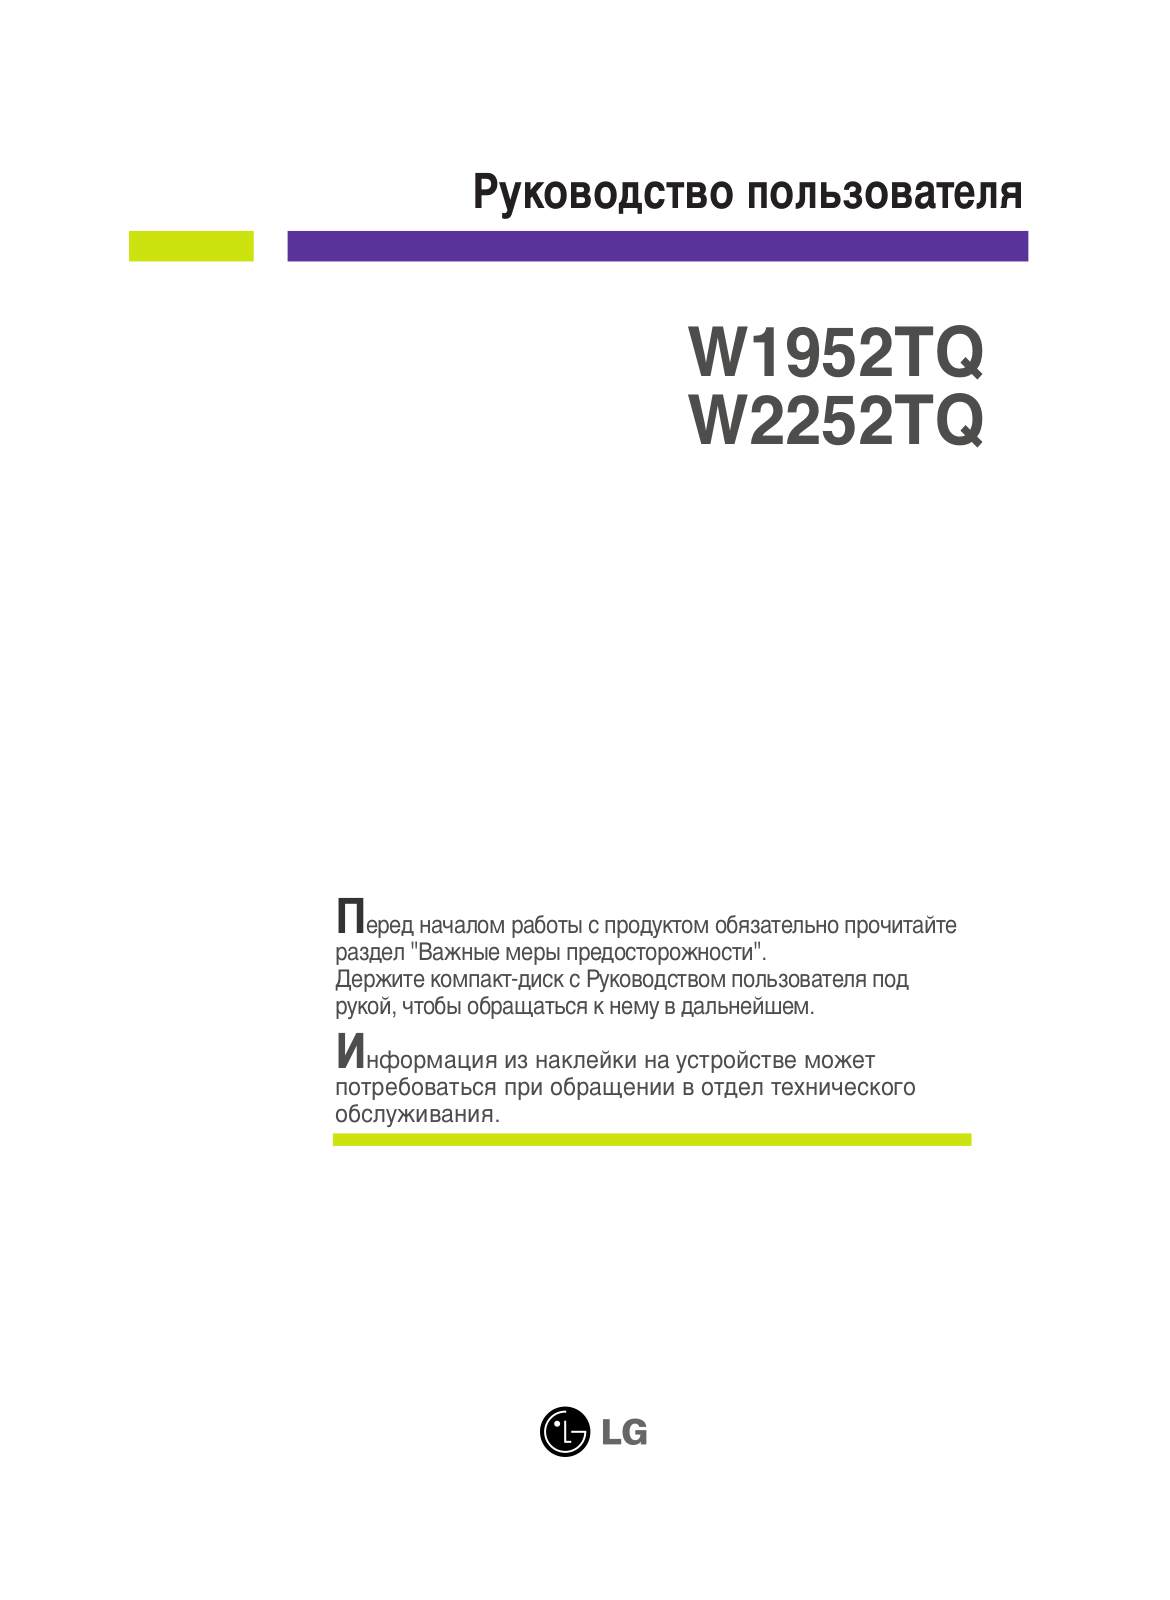 LG W2252TQ-WF User Manual